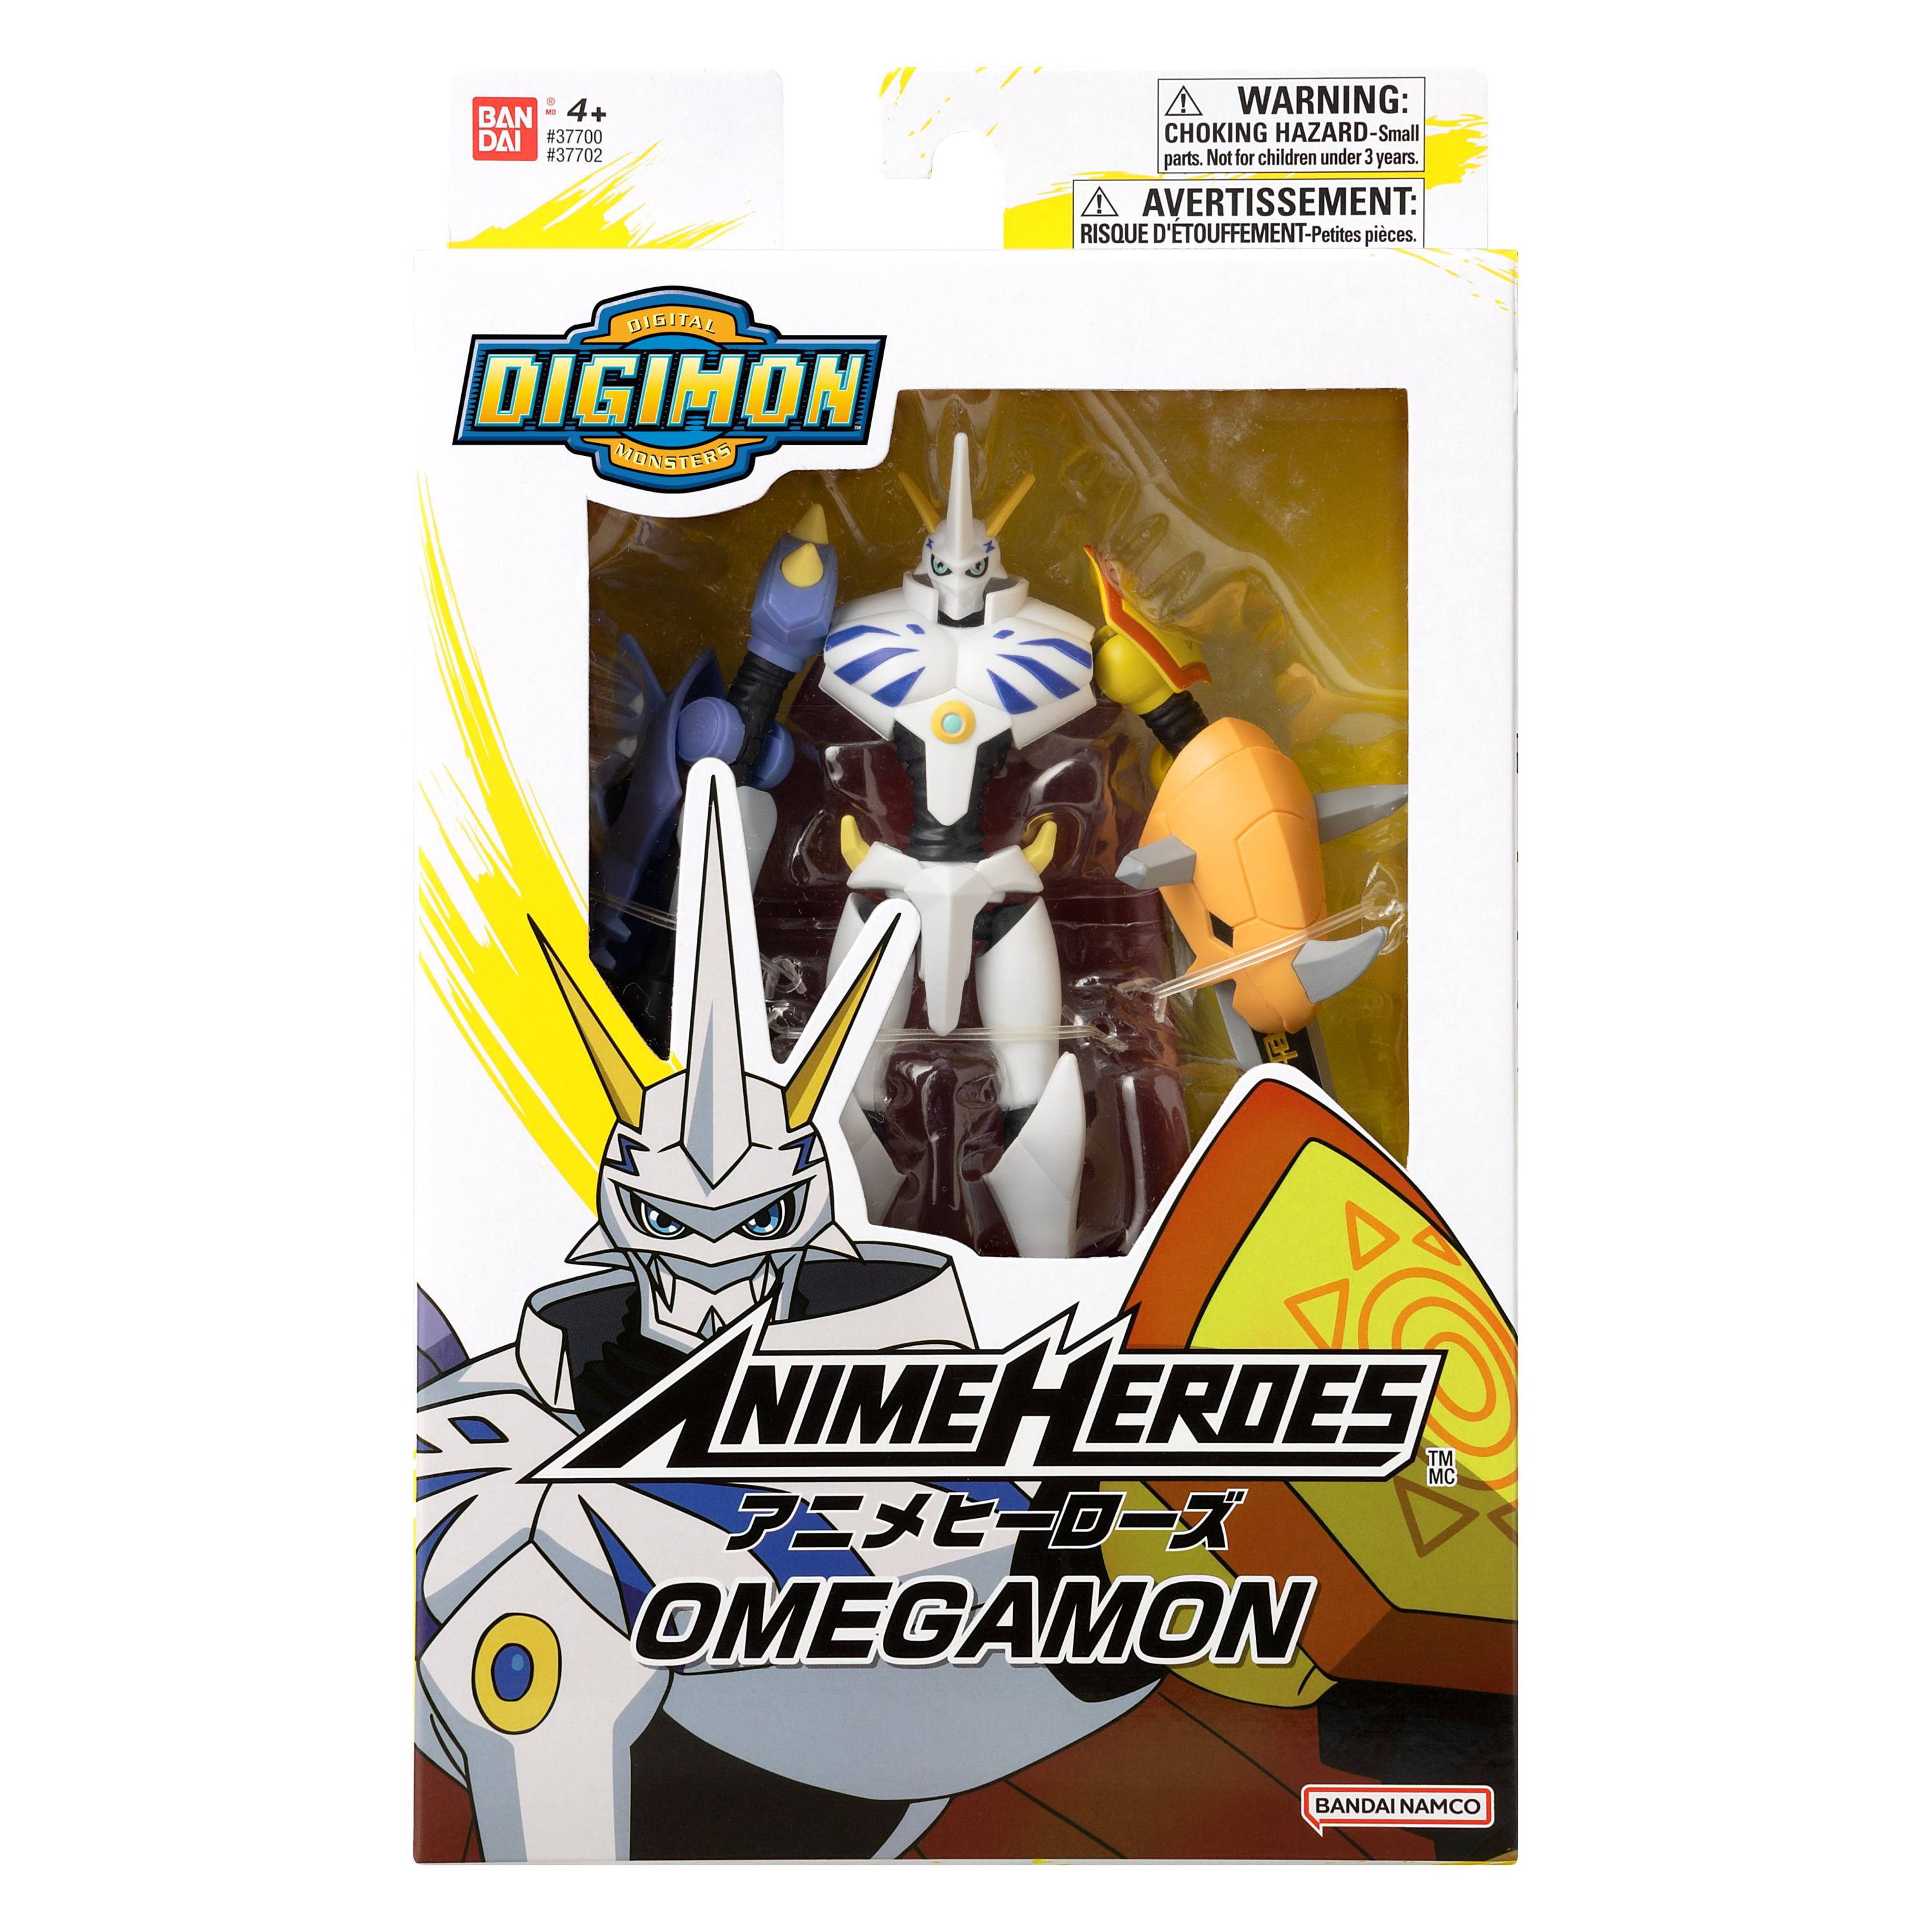 Bandai - Digimon - Anime Heroes Omegamon Action Figure